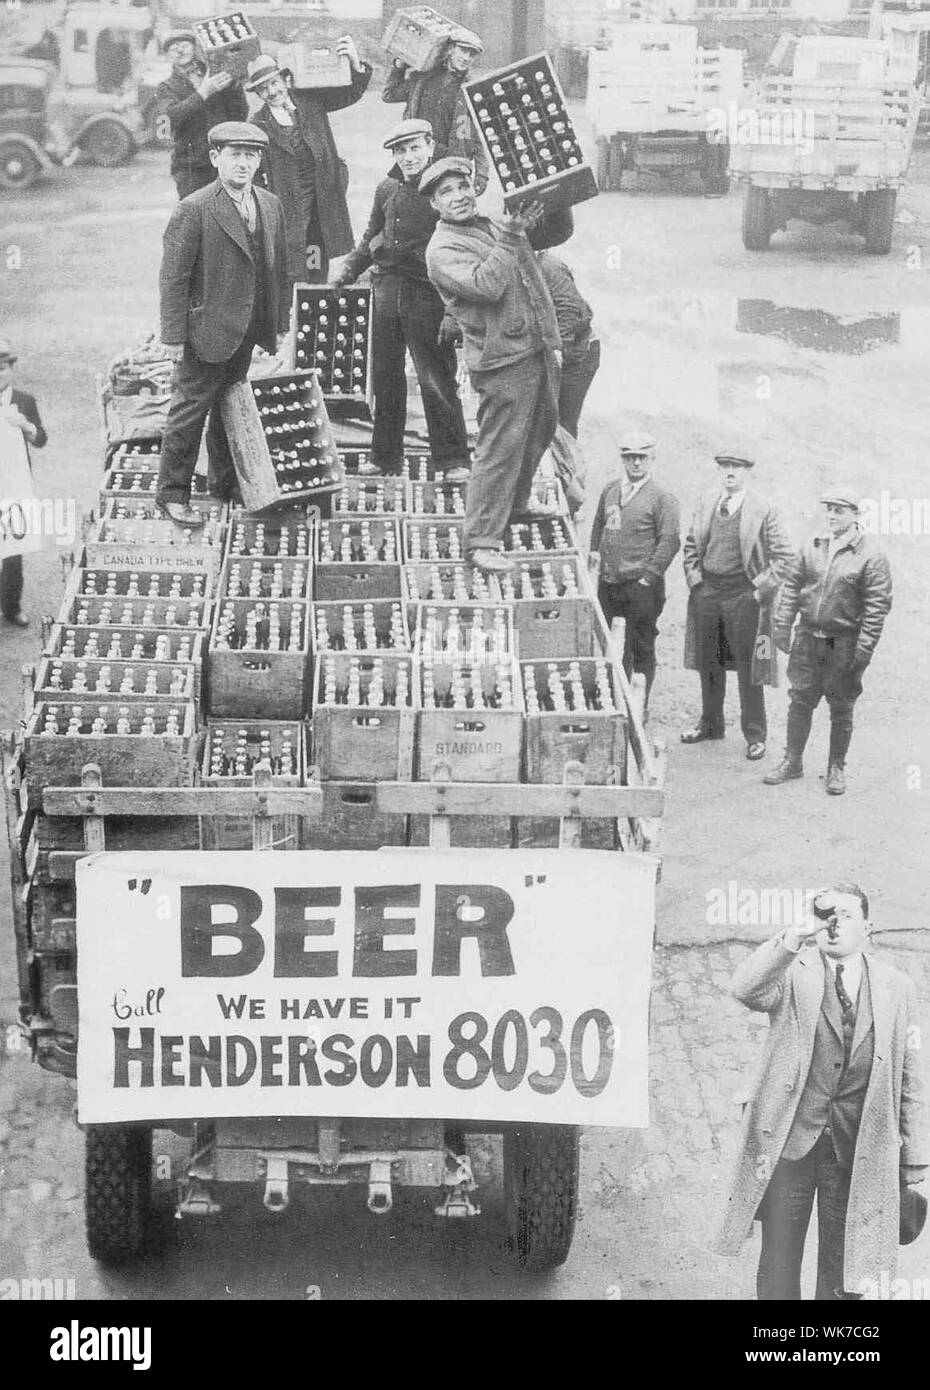 Periodi di divieto in America nel 30s - . Abbiamo Henderson 8030 Foto Stock